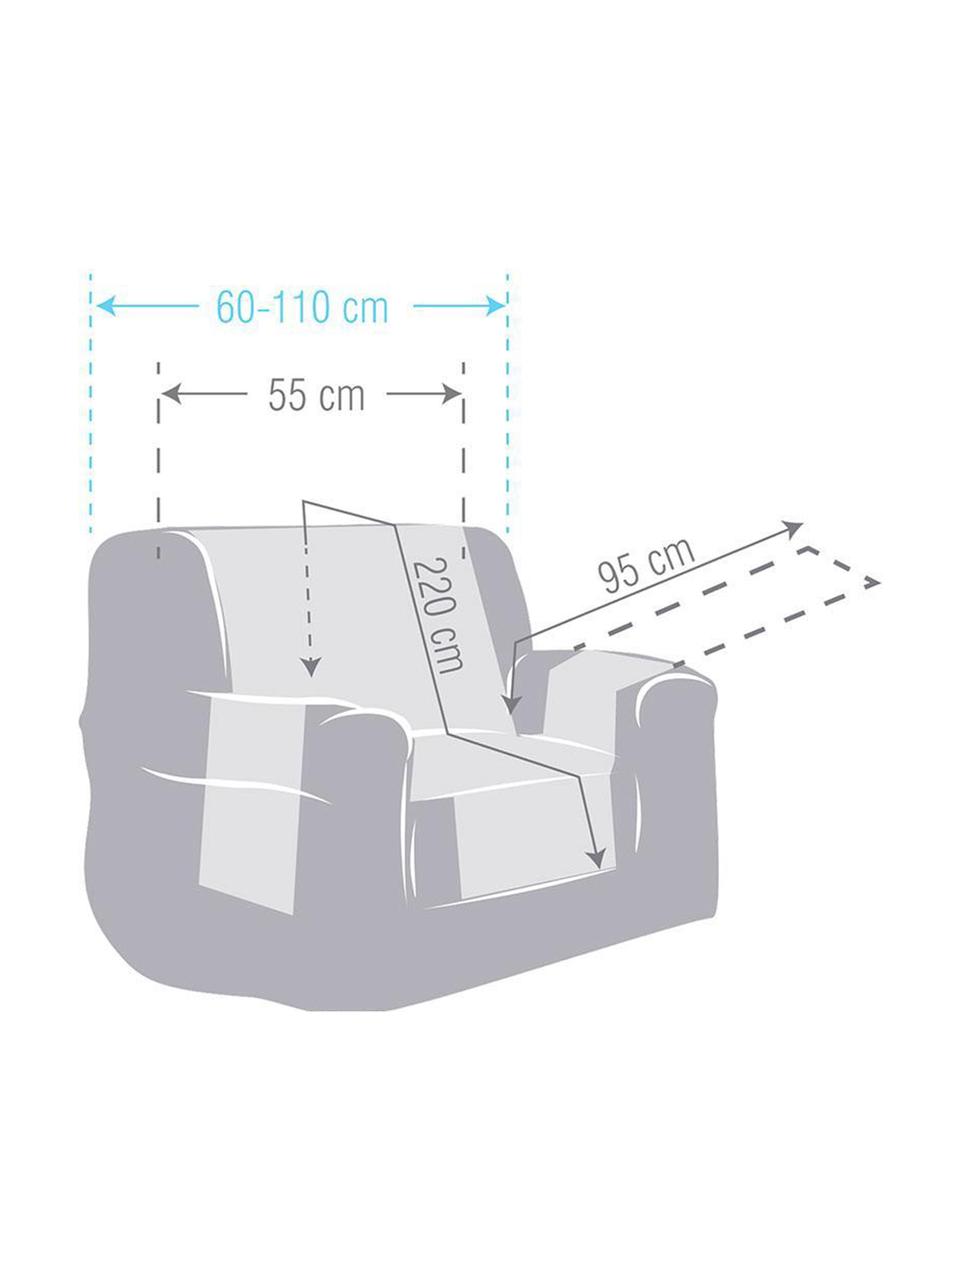 Narzuta na fotel Levante, 65% bawełna, 35% poliester, Odcienie kremowego, S 55 x D 220 cm